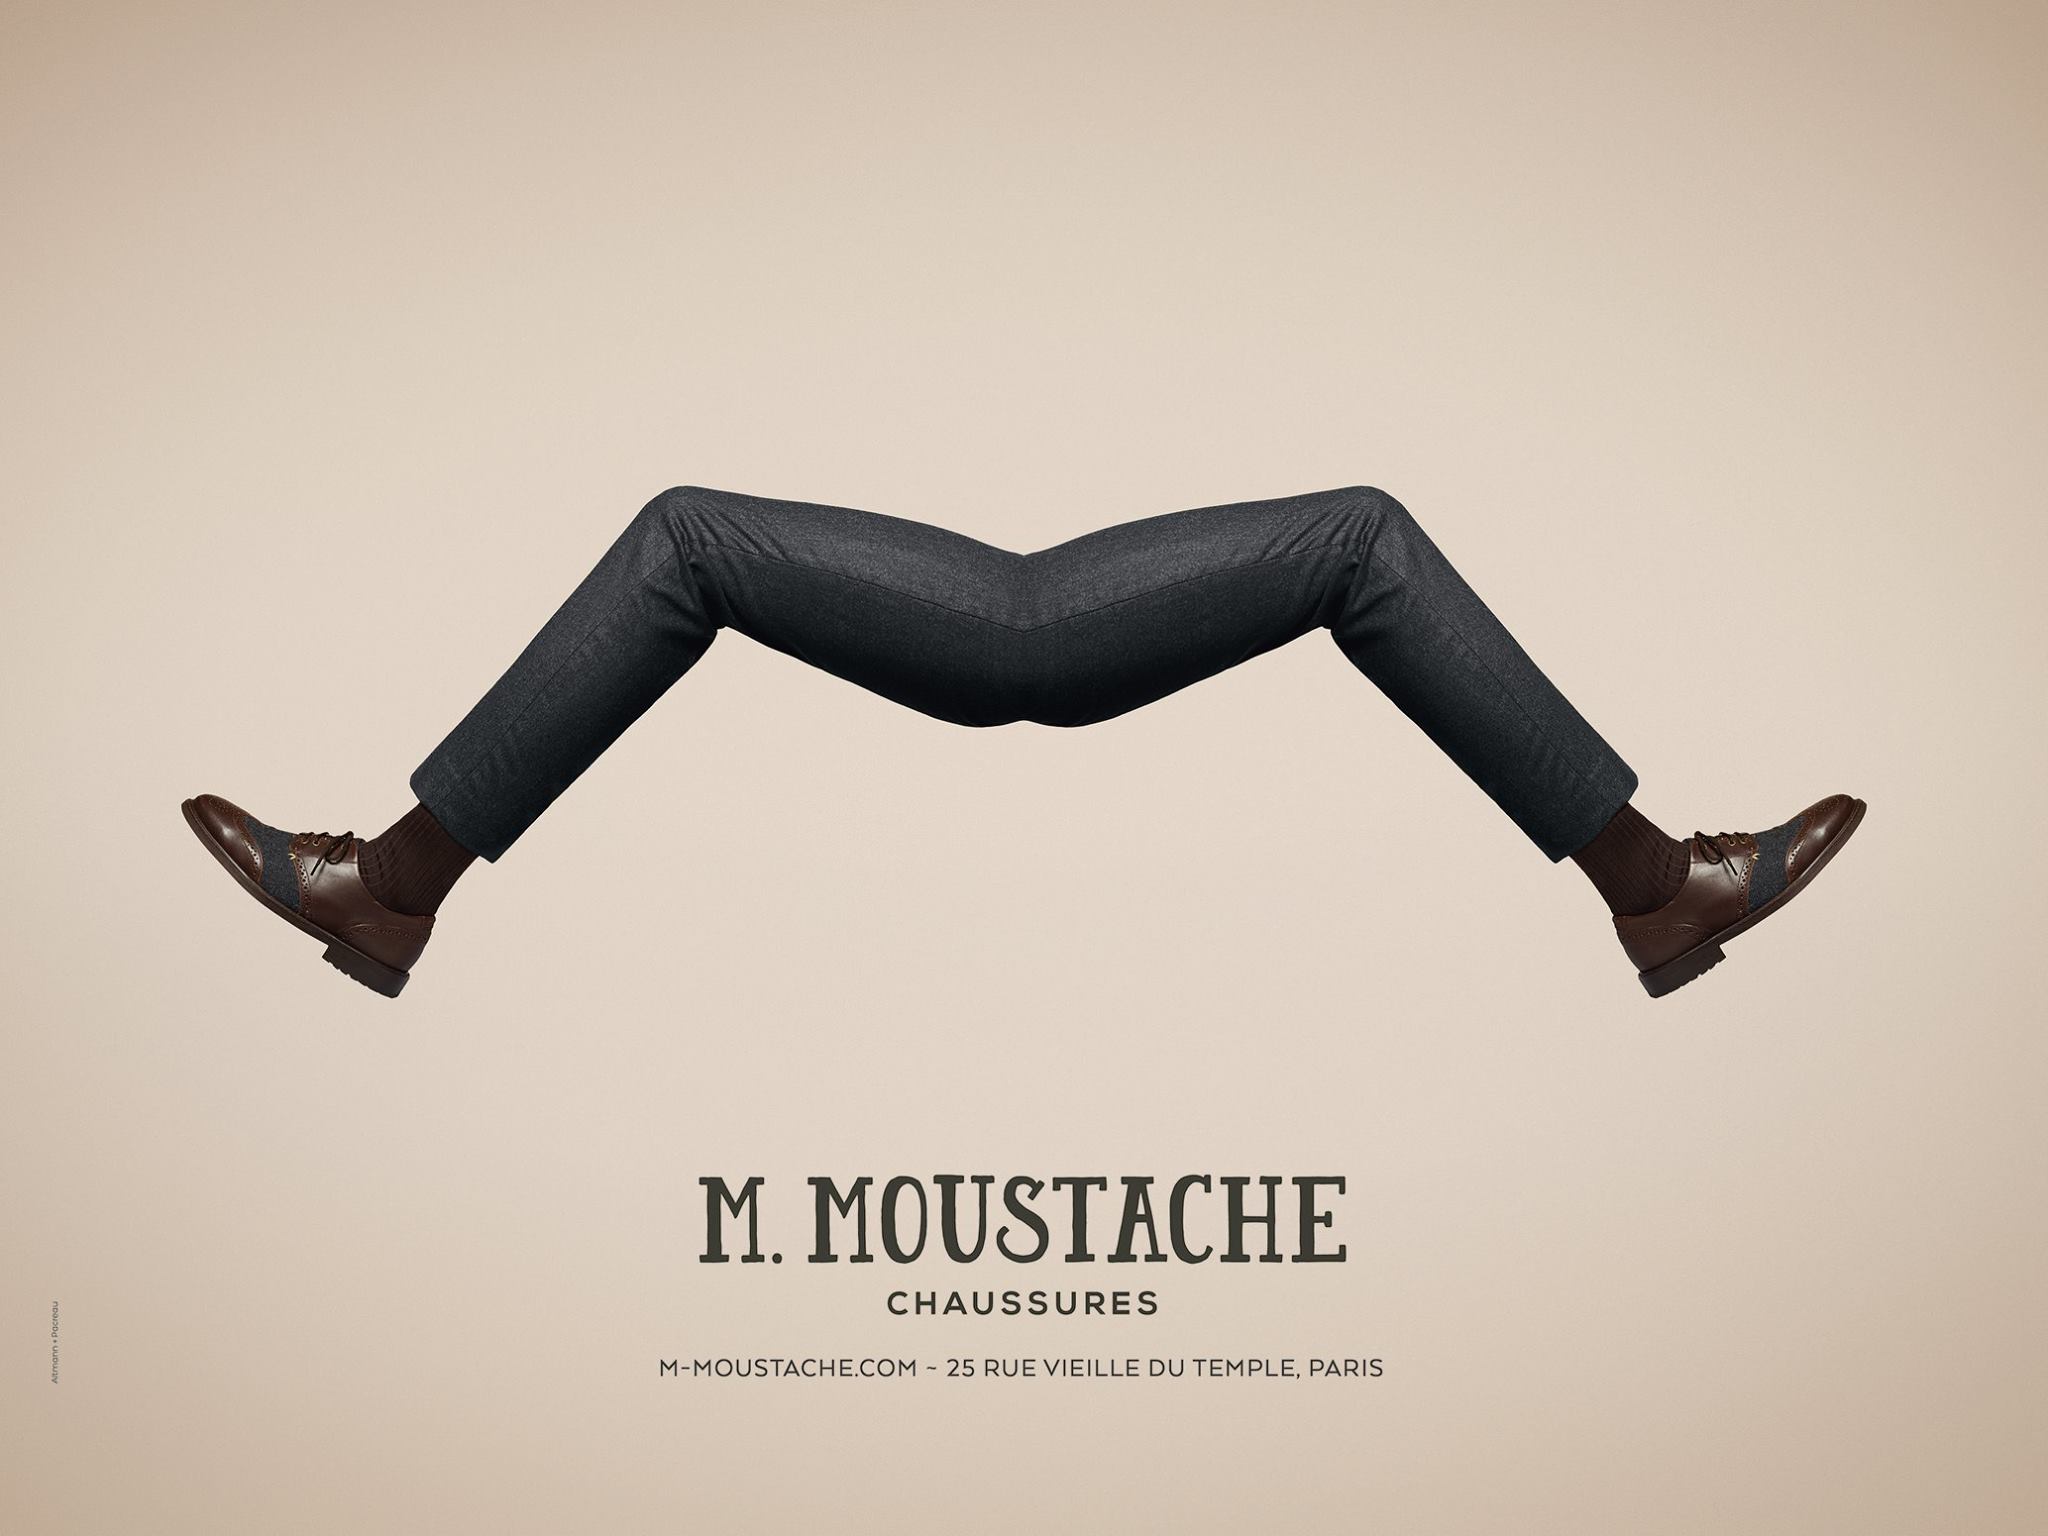 m-monsieur-moustache-chaussures-paris-rue-vieille-du-temple-publicite-affiche-agence-altmann-pacreau-2